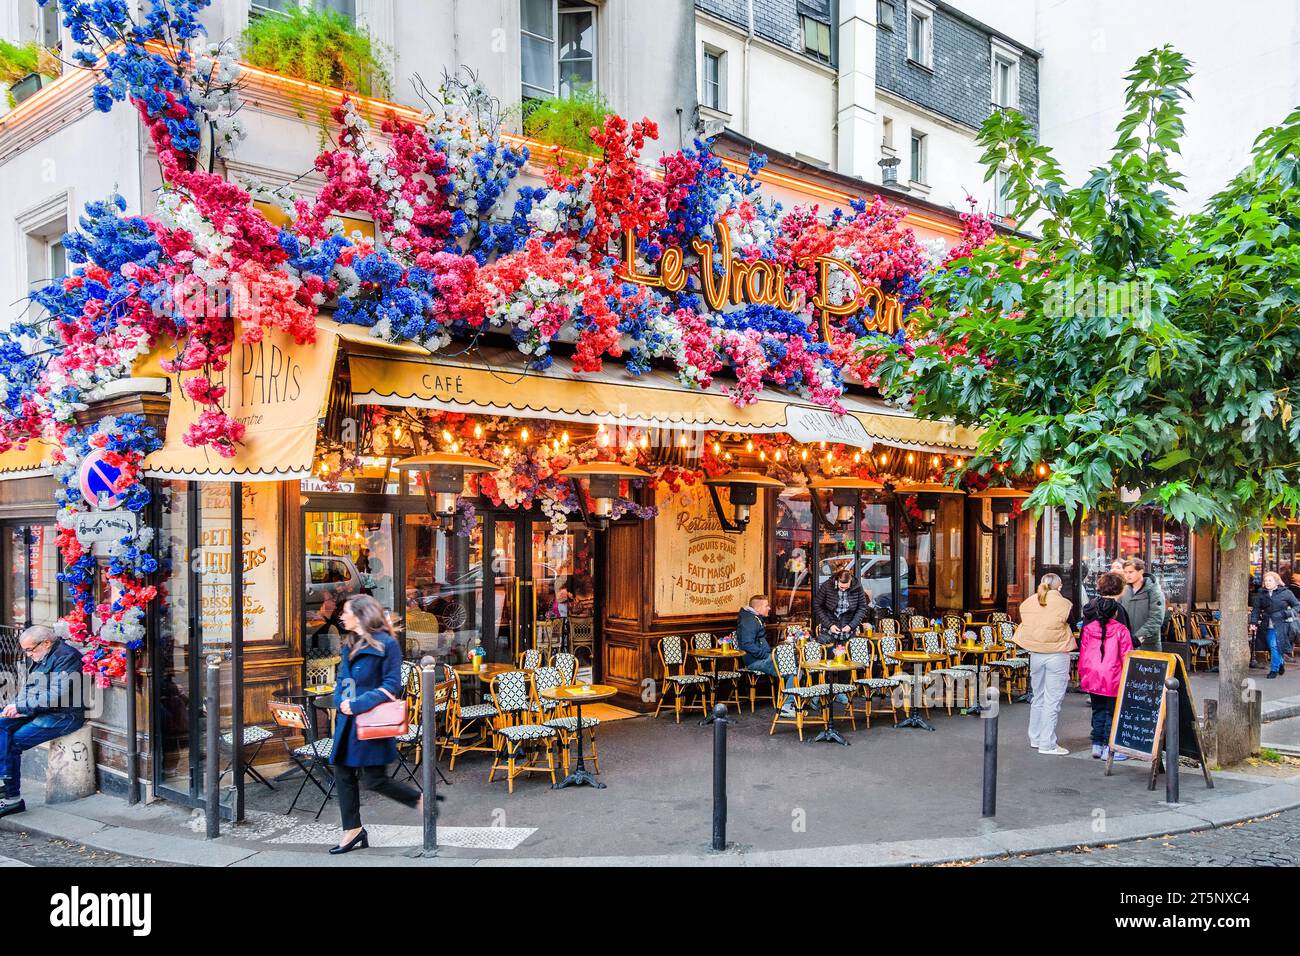 Decorated floral front of 'Le Vrai Paris' bistro on the Rue des Abbesses, Montmartre, Paris 18, France. Stock Photo